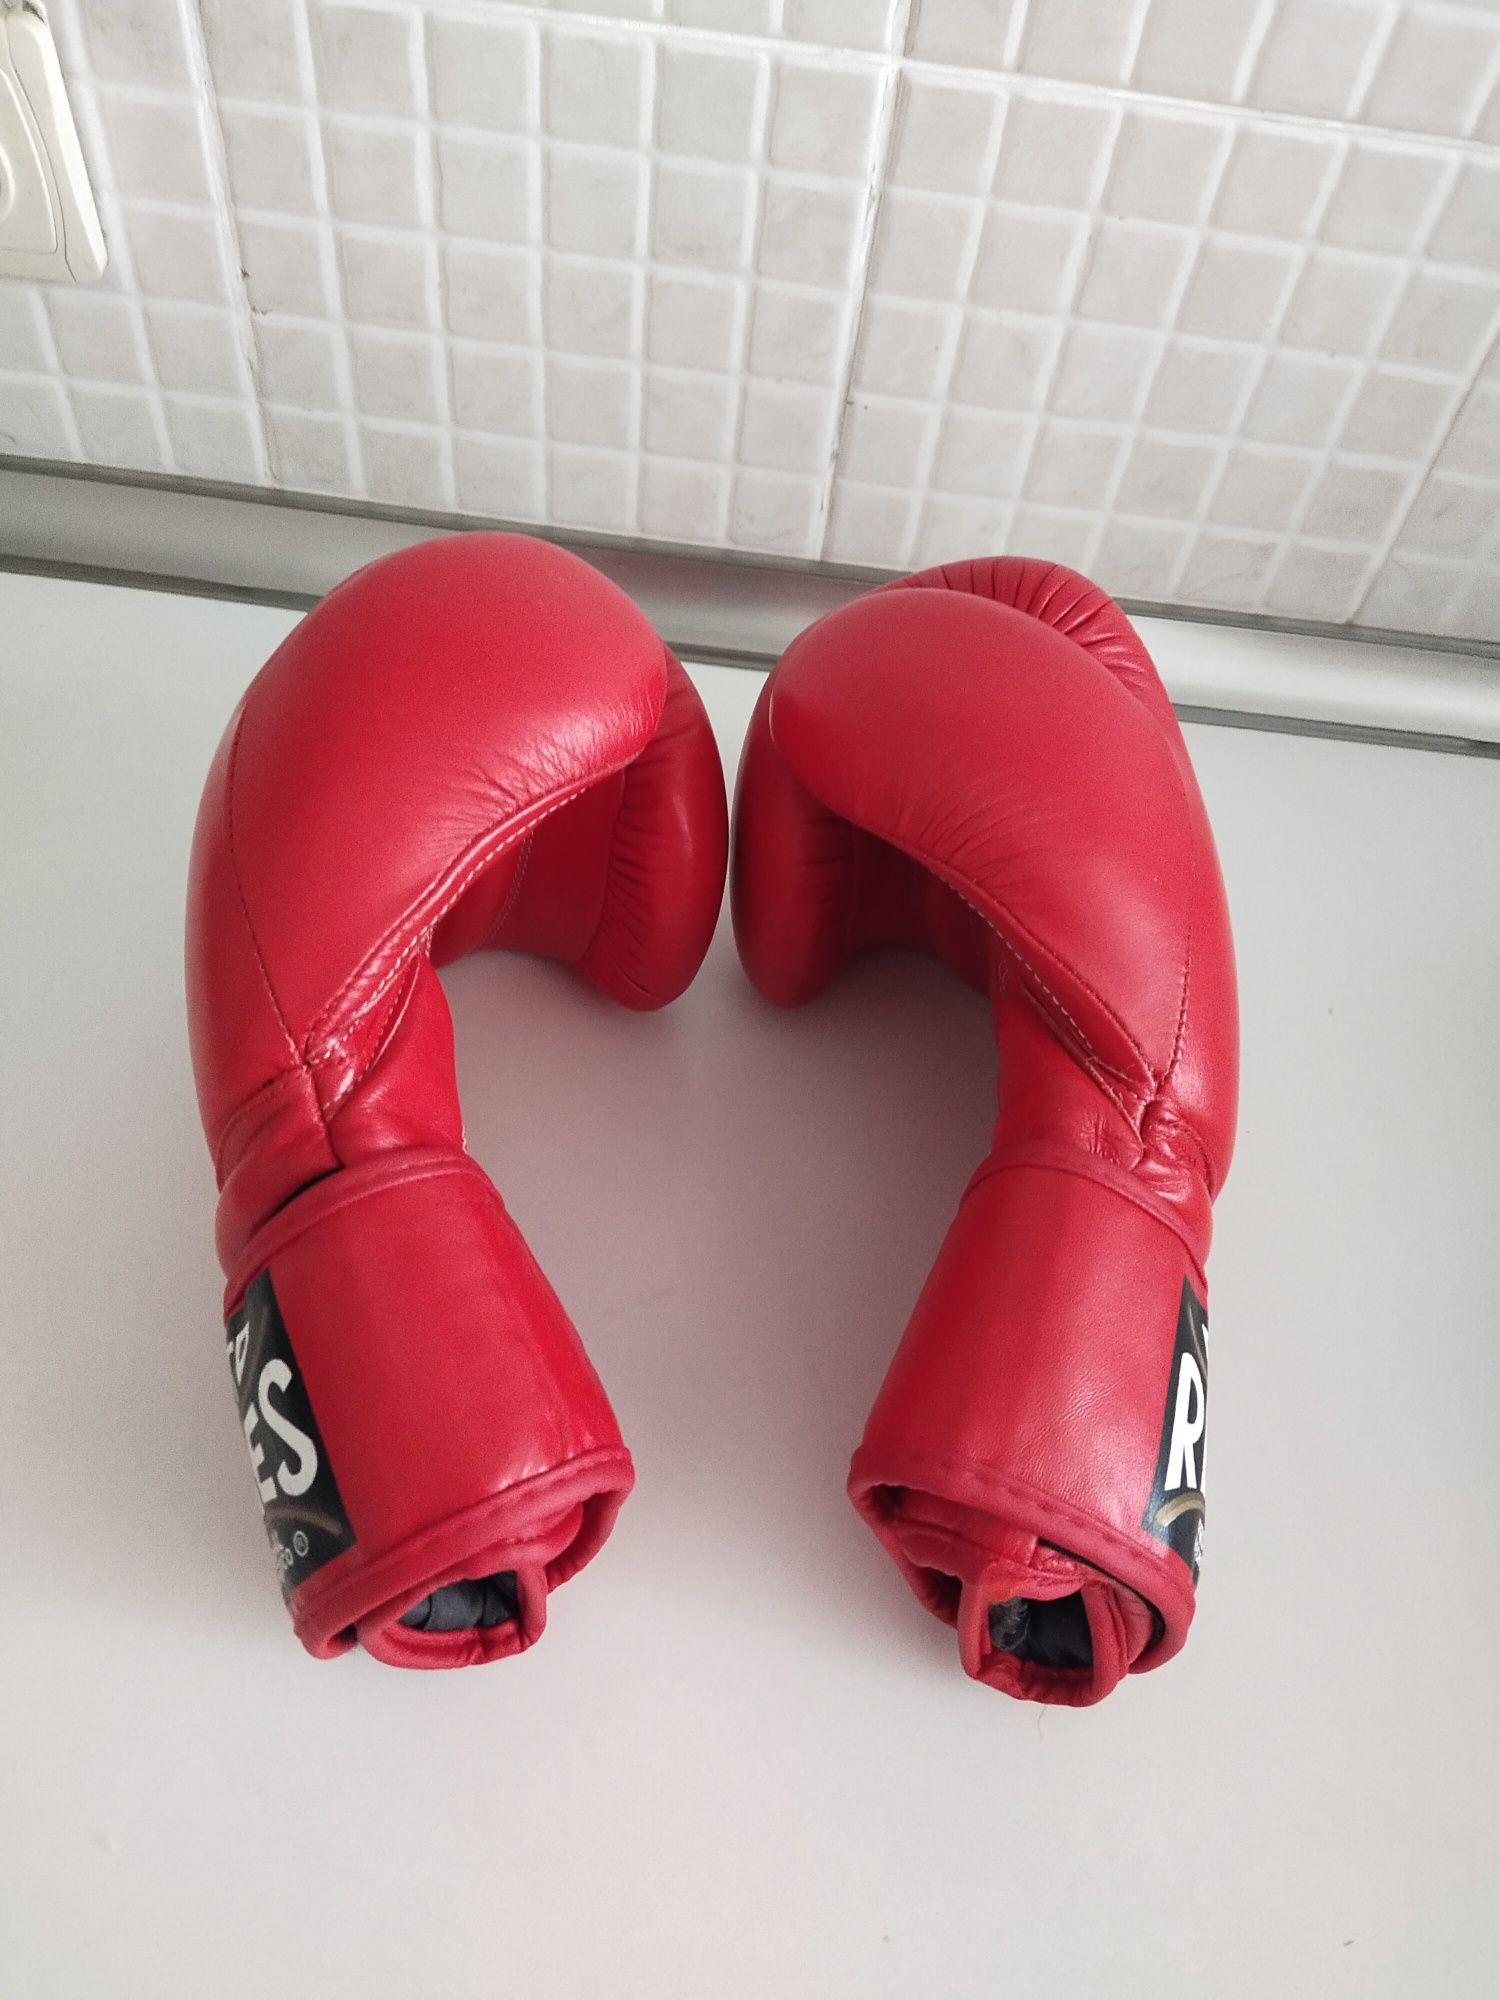 Срочно продам боксерские перчатки Cleto Reyes